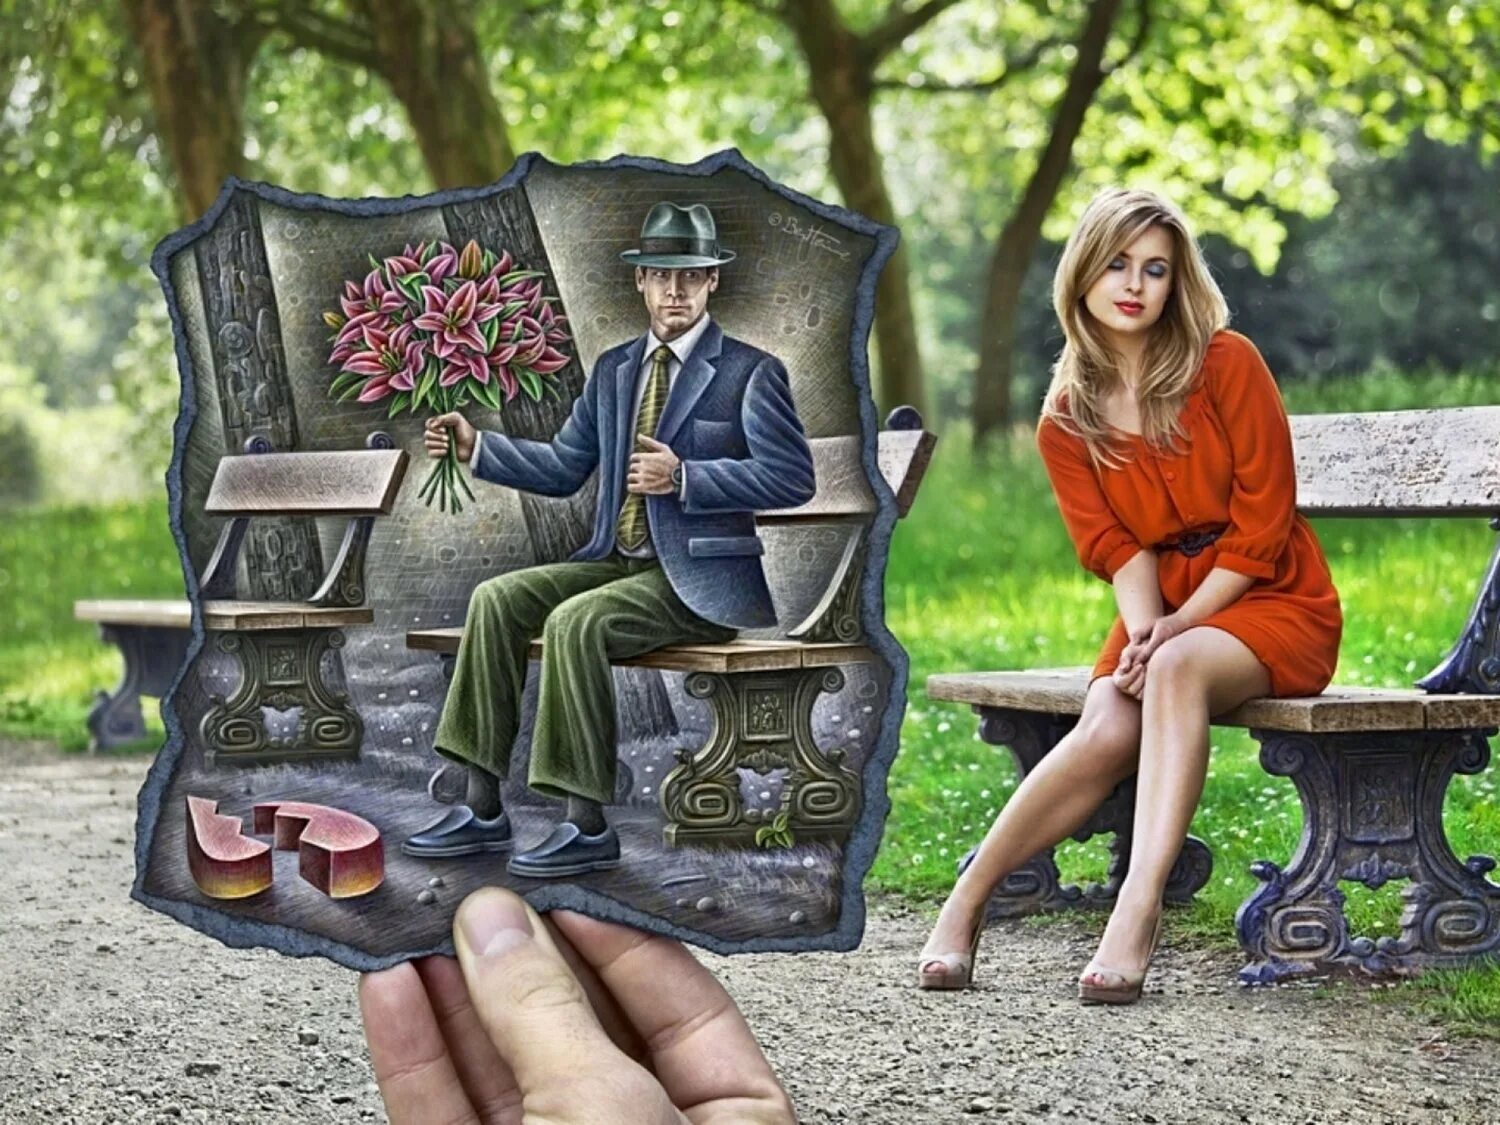 Художник Бен Хайне. Ben Heine художник. Бельгийский художник Бен Гейне. Девушка на скамейке в парке. Красоту сидели люди